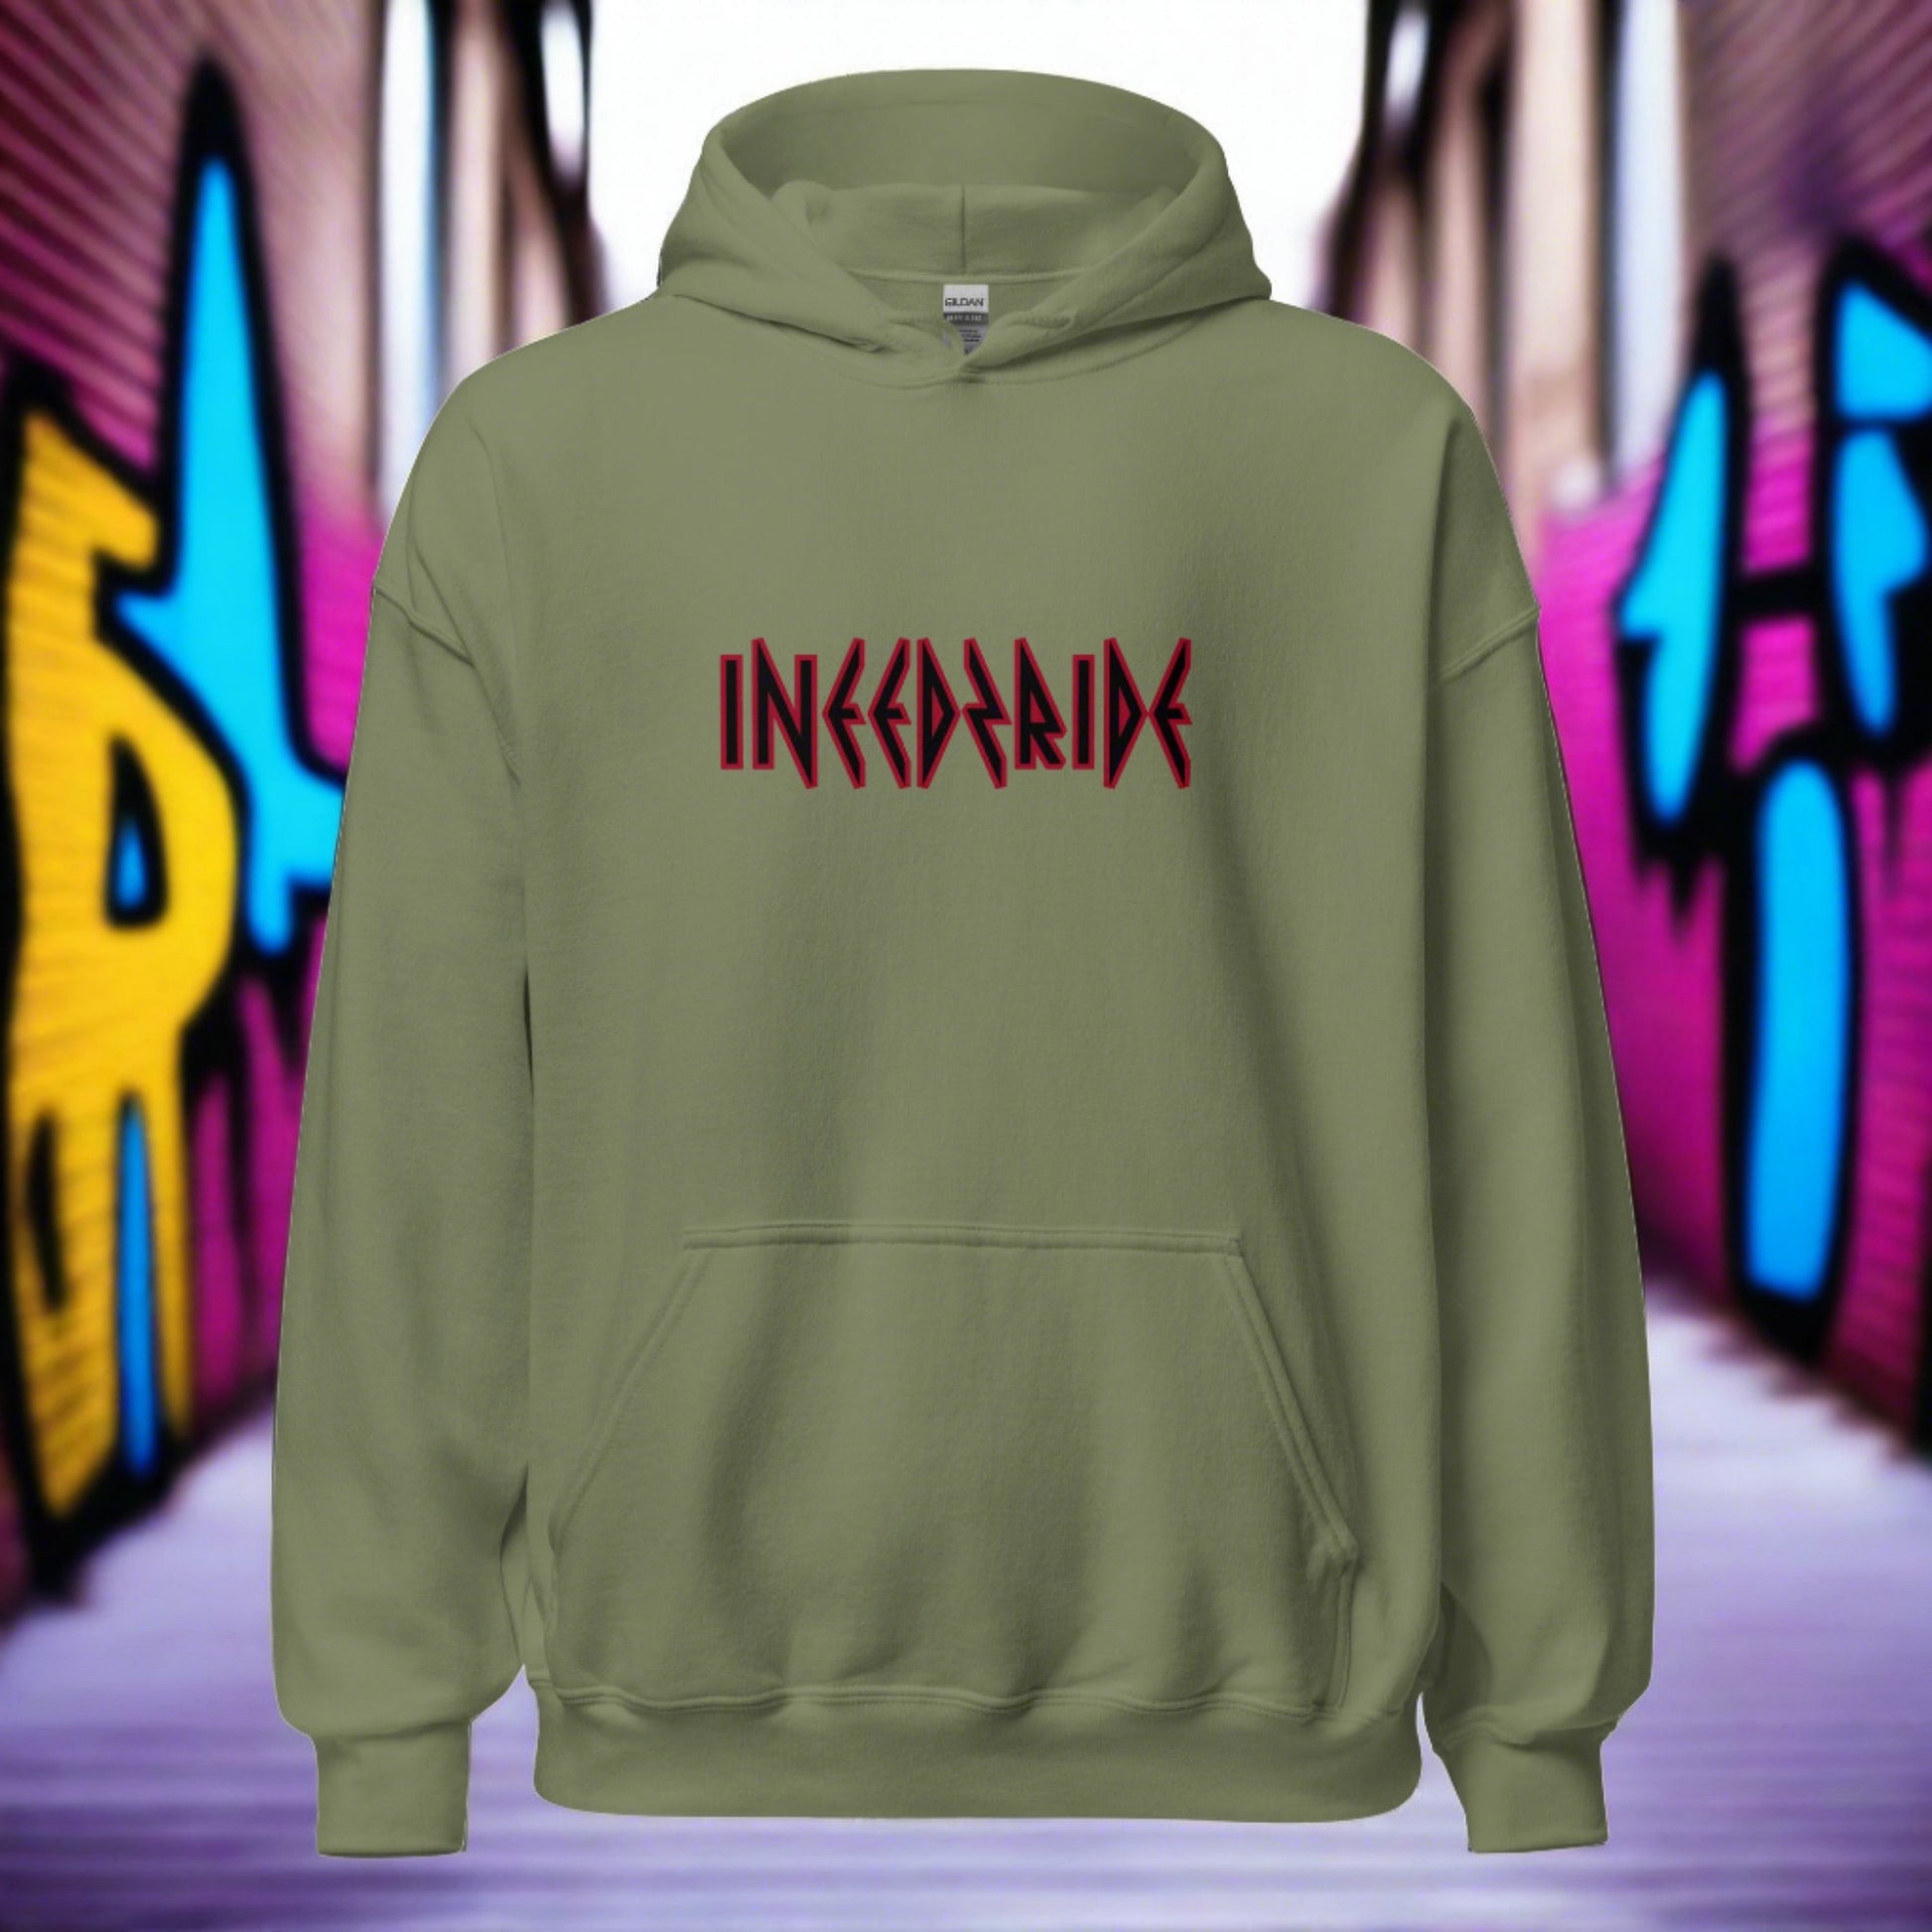 UrbanXtreme Hoodie Front | Unisex